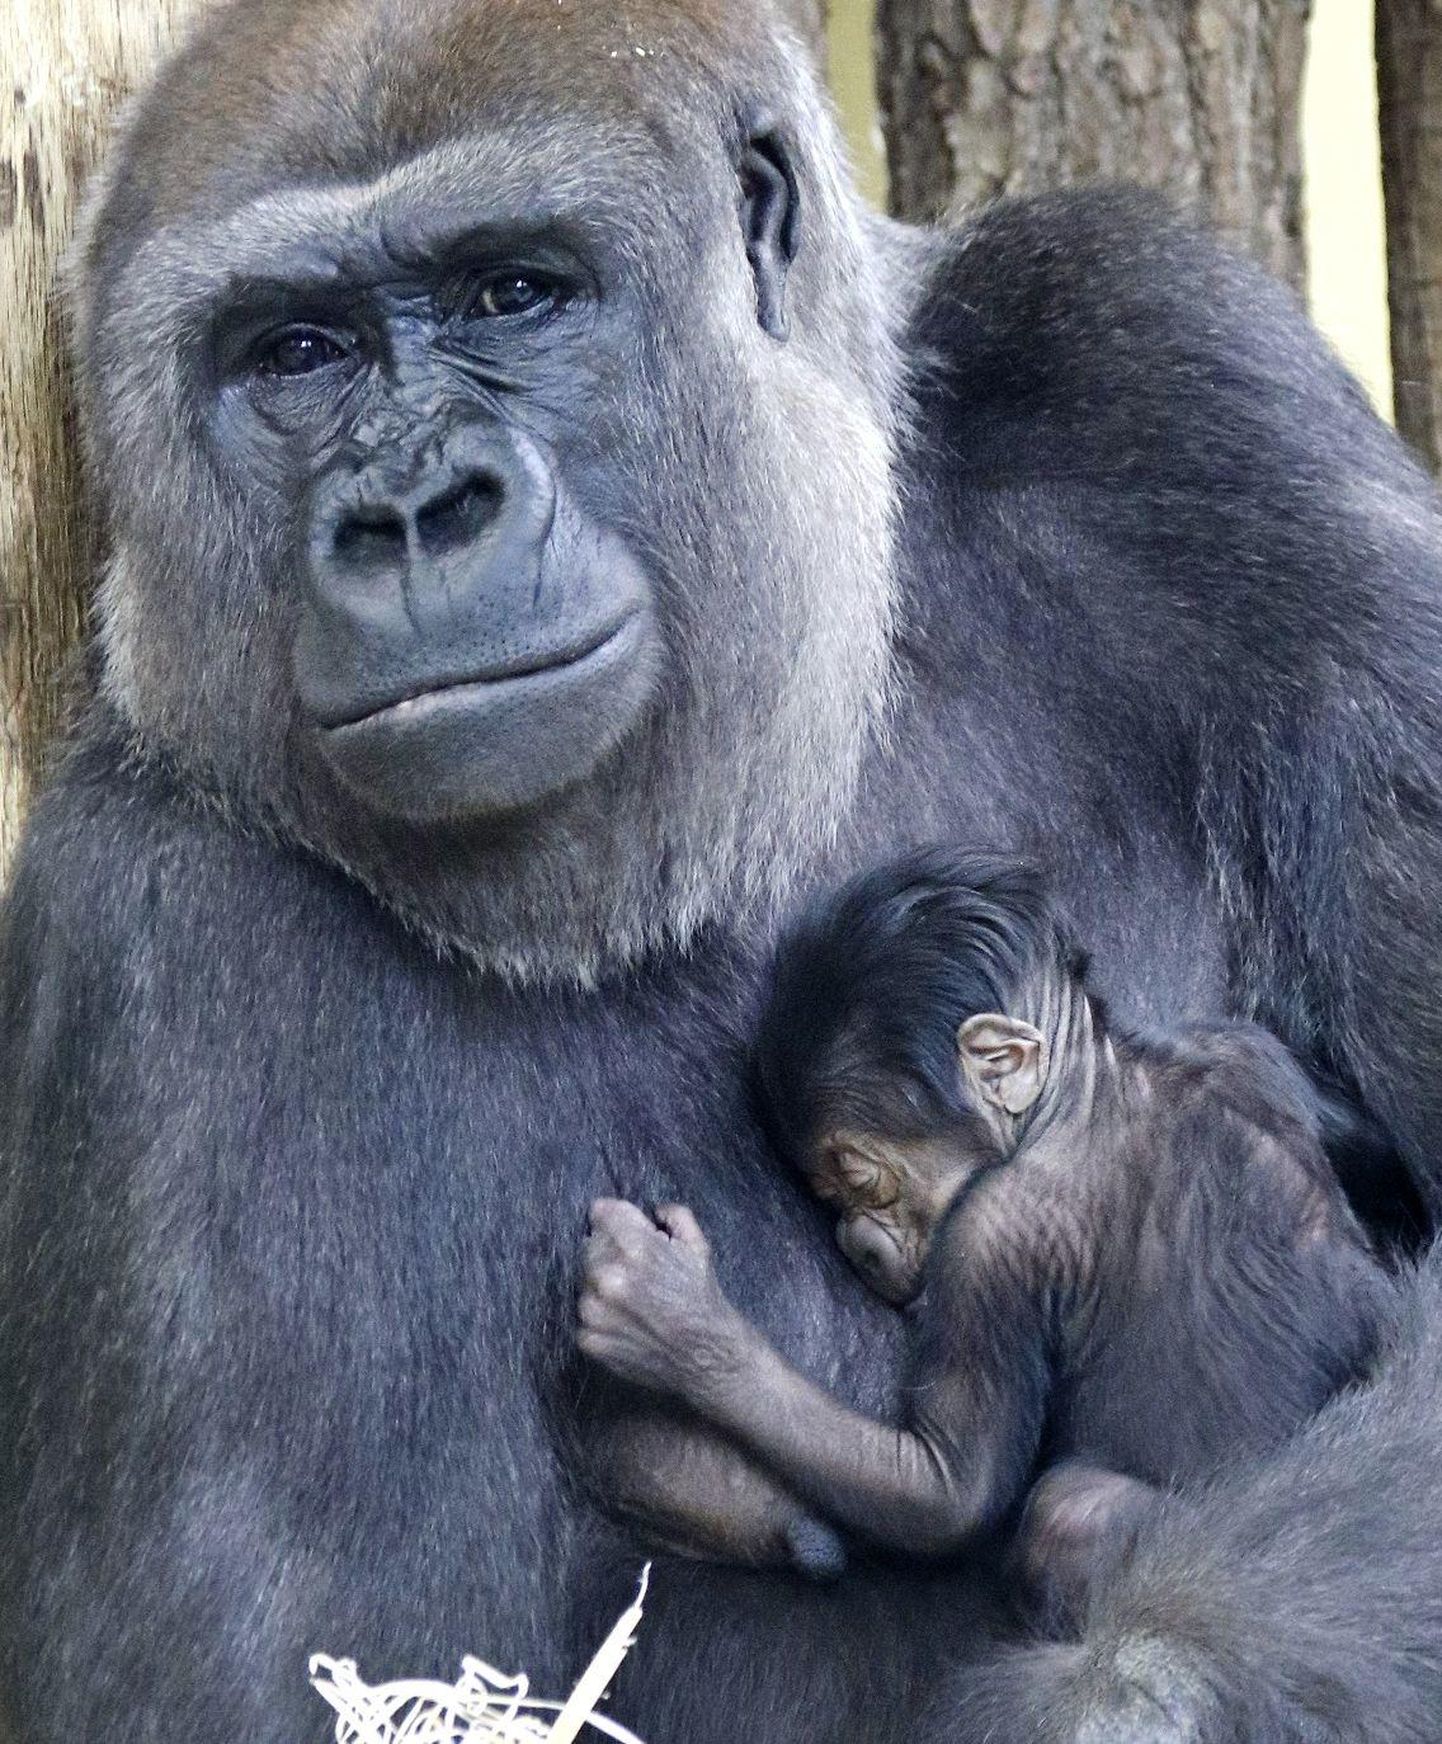 Berliini loomaaia 24-aastane gorilla Bibi koos oma selle nädala hakul sündinud tillukese järeltulijaga.